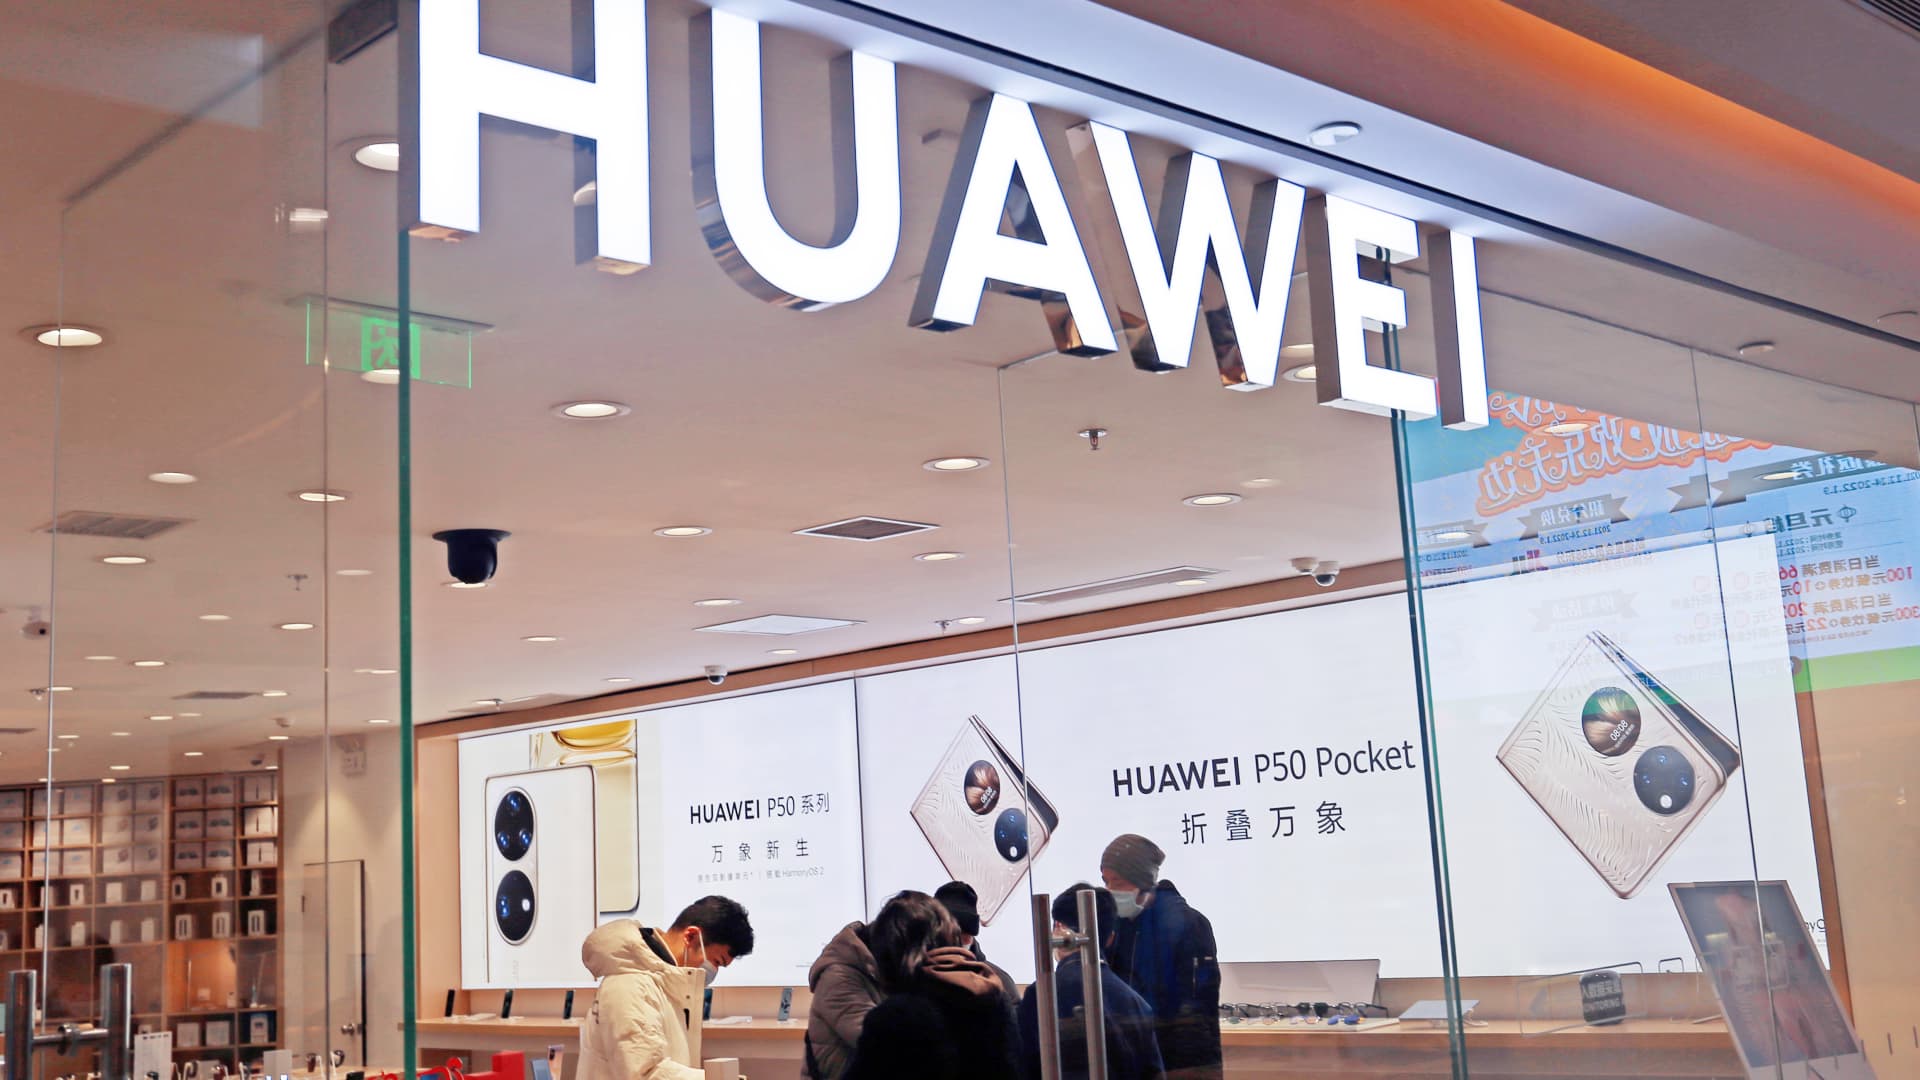 Huawei's omzet daalt in het eerste kwartaal als de verkoop van smartphones daalt